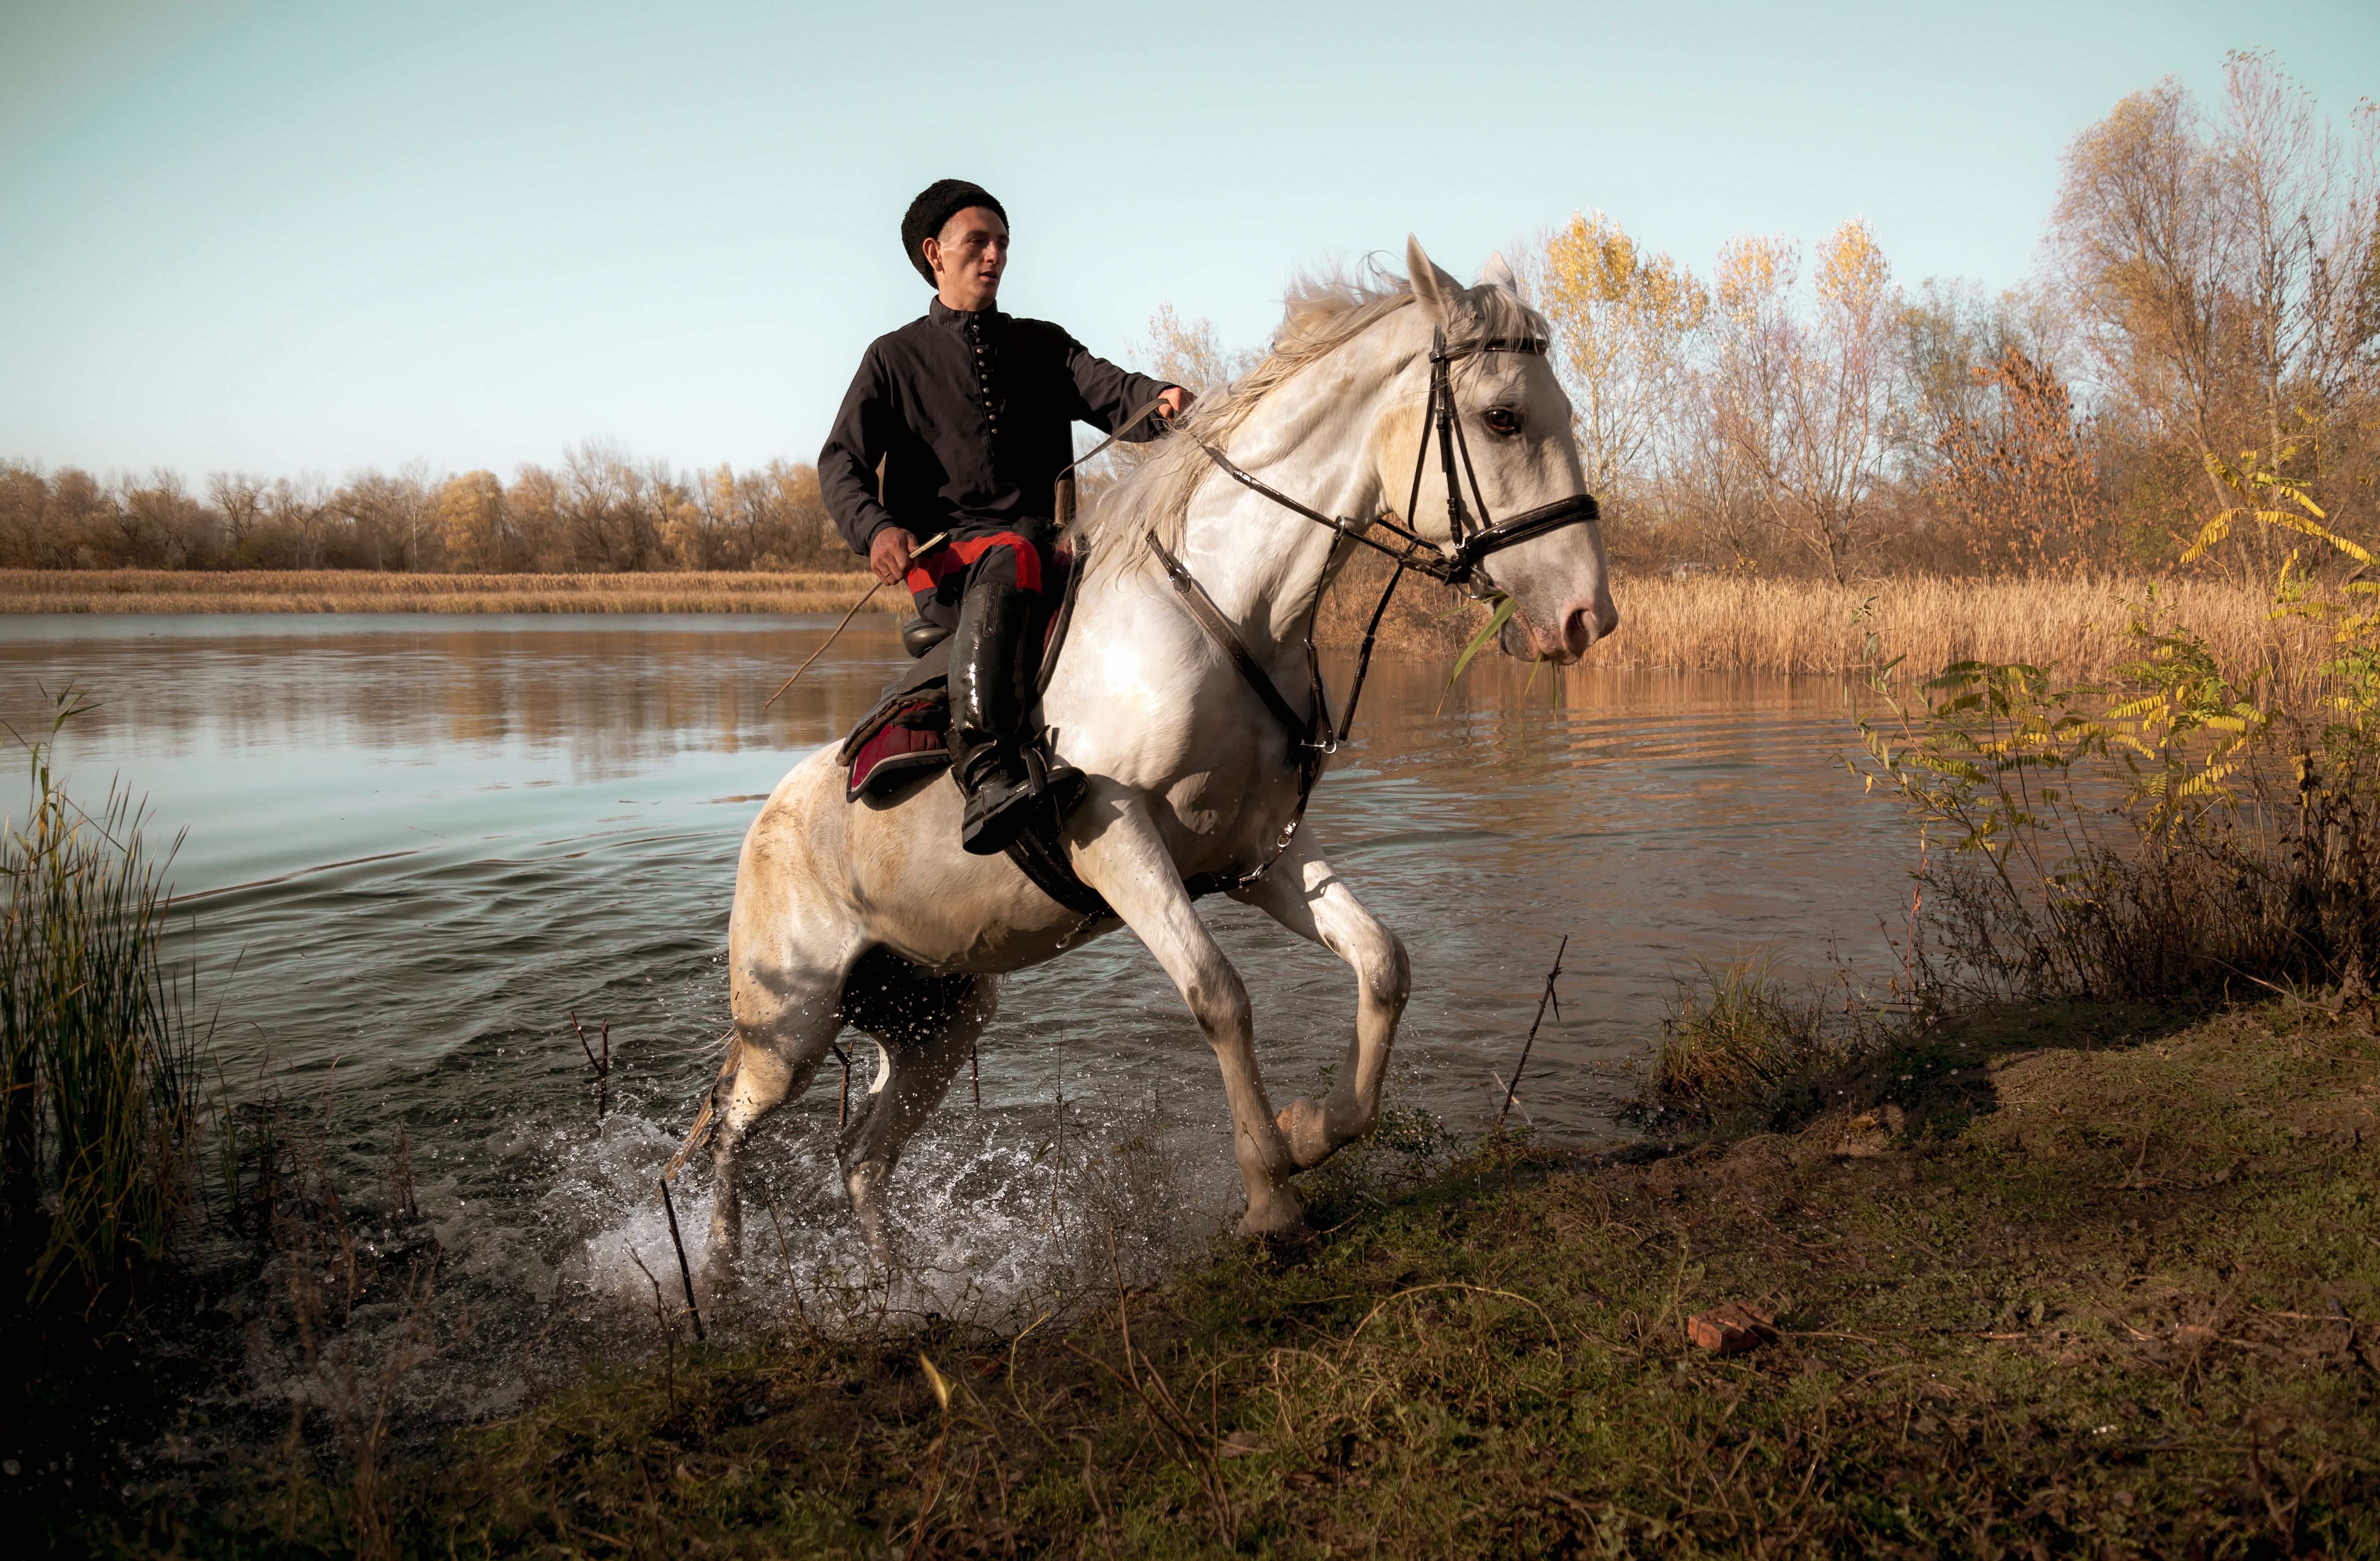 horse cossac culture autumn water pond лошадь казак природа культура традиции история осень пруд вода, Егор Бугримов